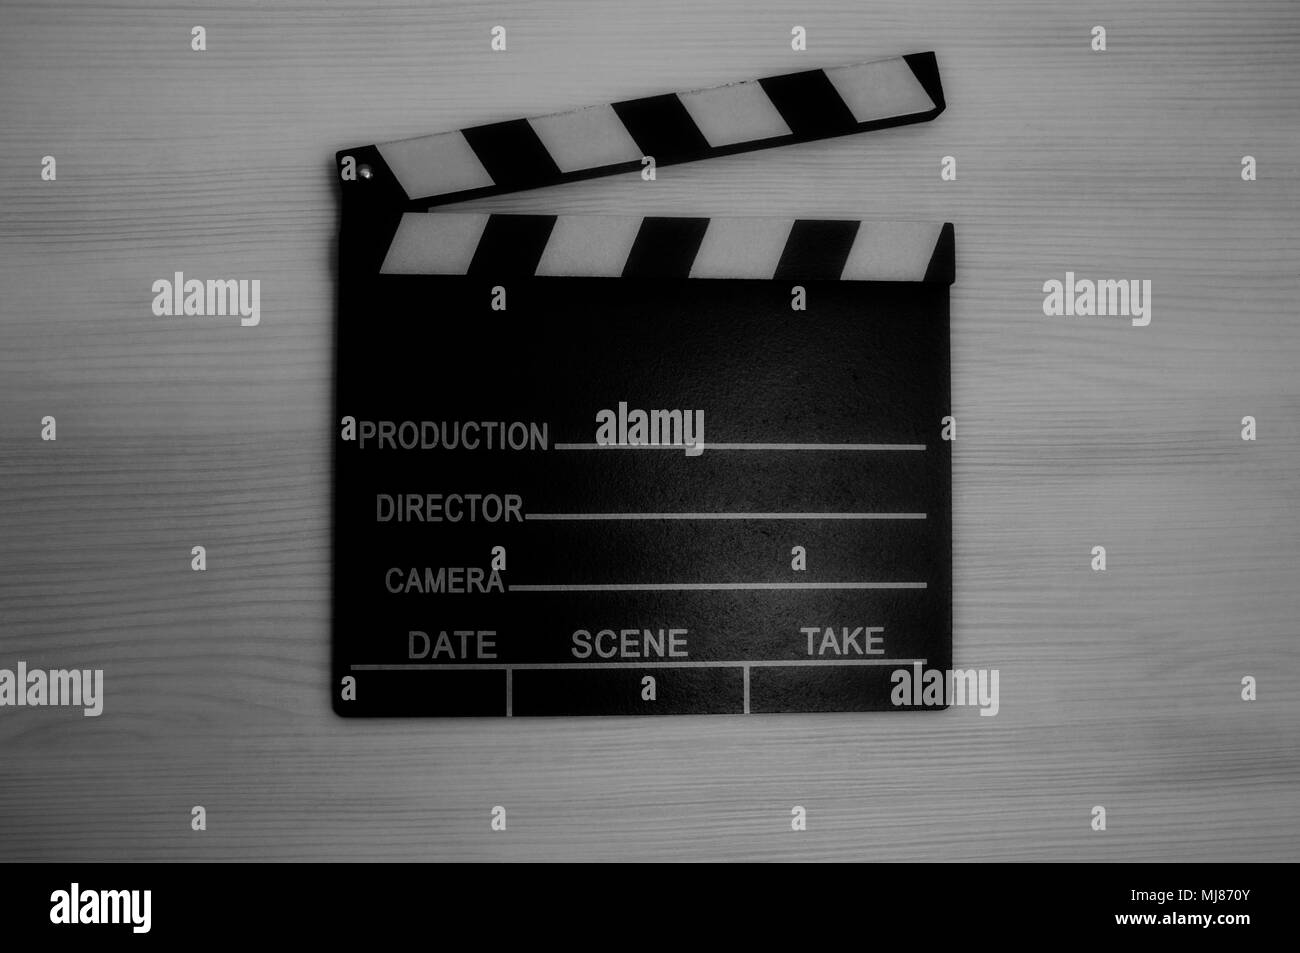 Clap Production photo en noir et blanc Banque D'Images